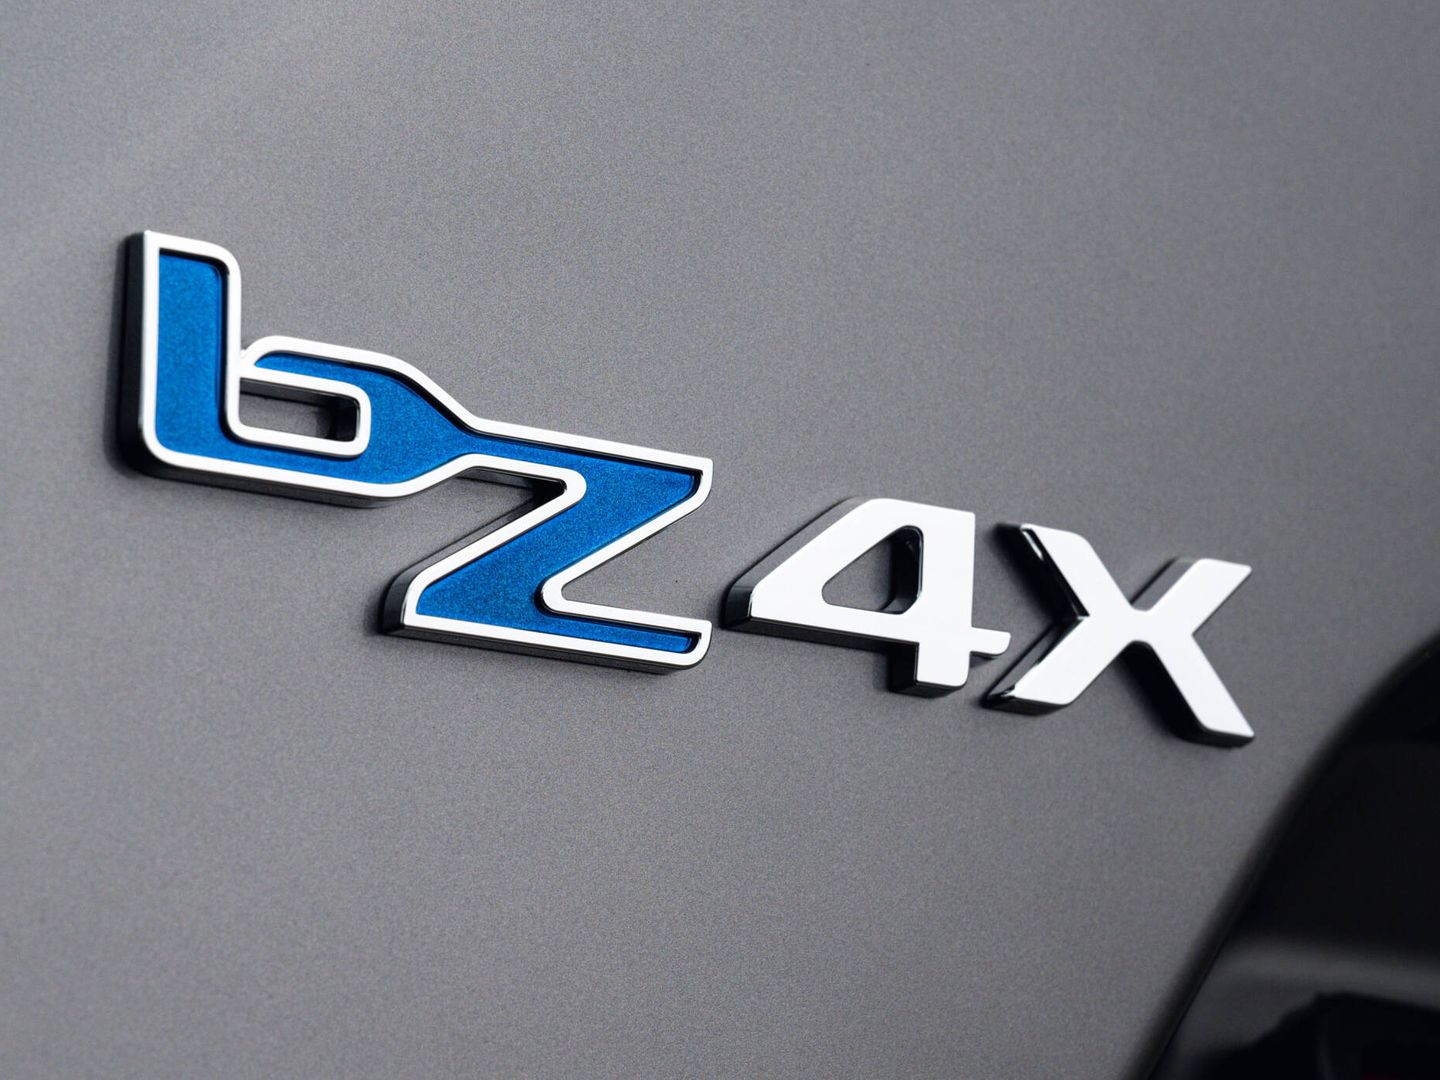 En realidad, 'bZ' es la submarca eléctrica de Toyota. El '4' es por tamaño y la 'X', por ser SUV.